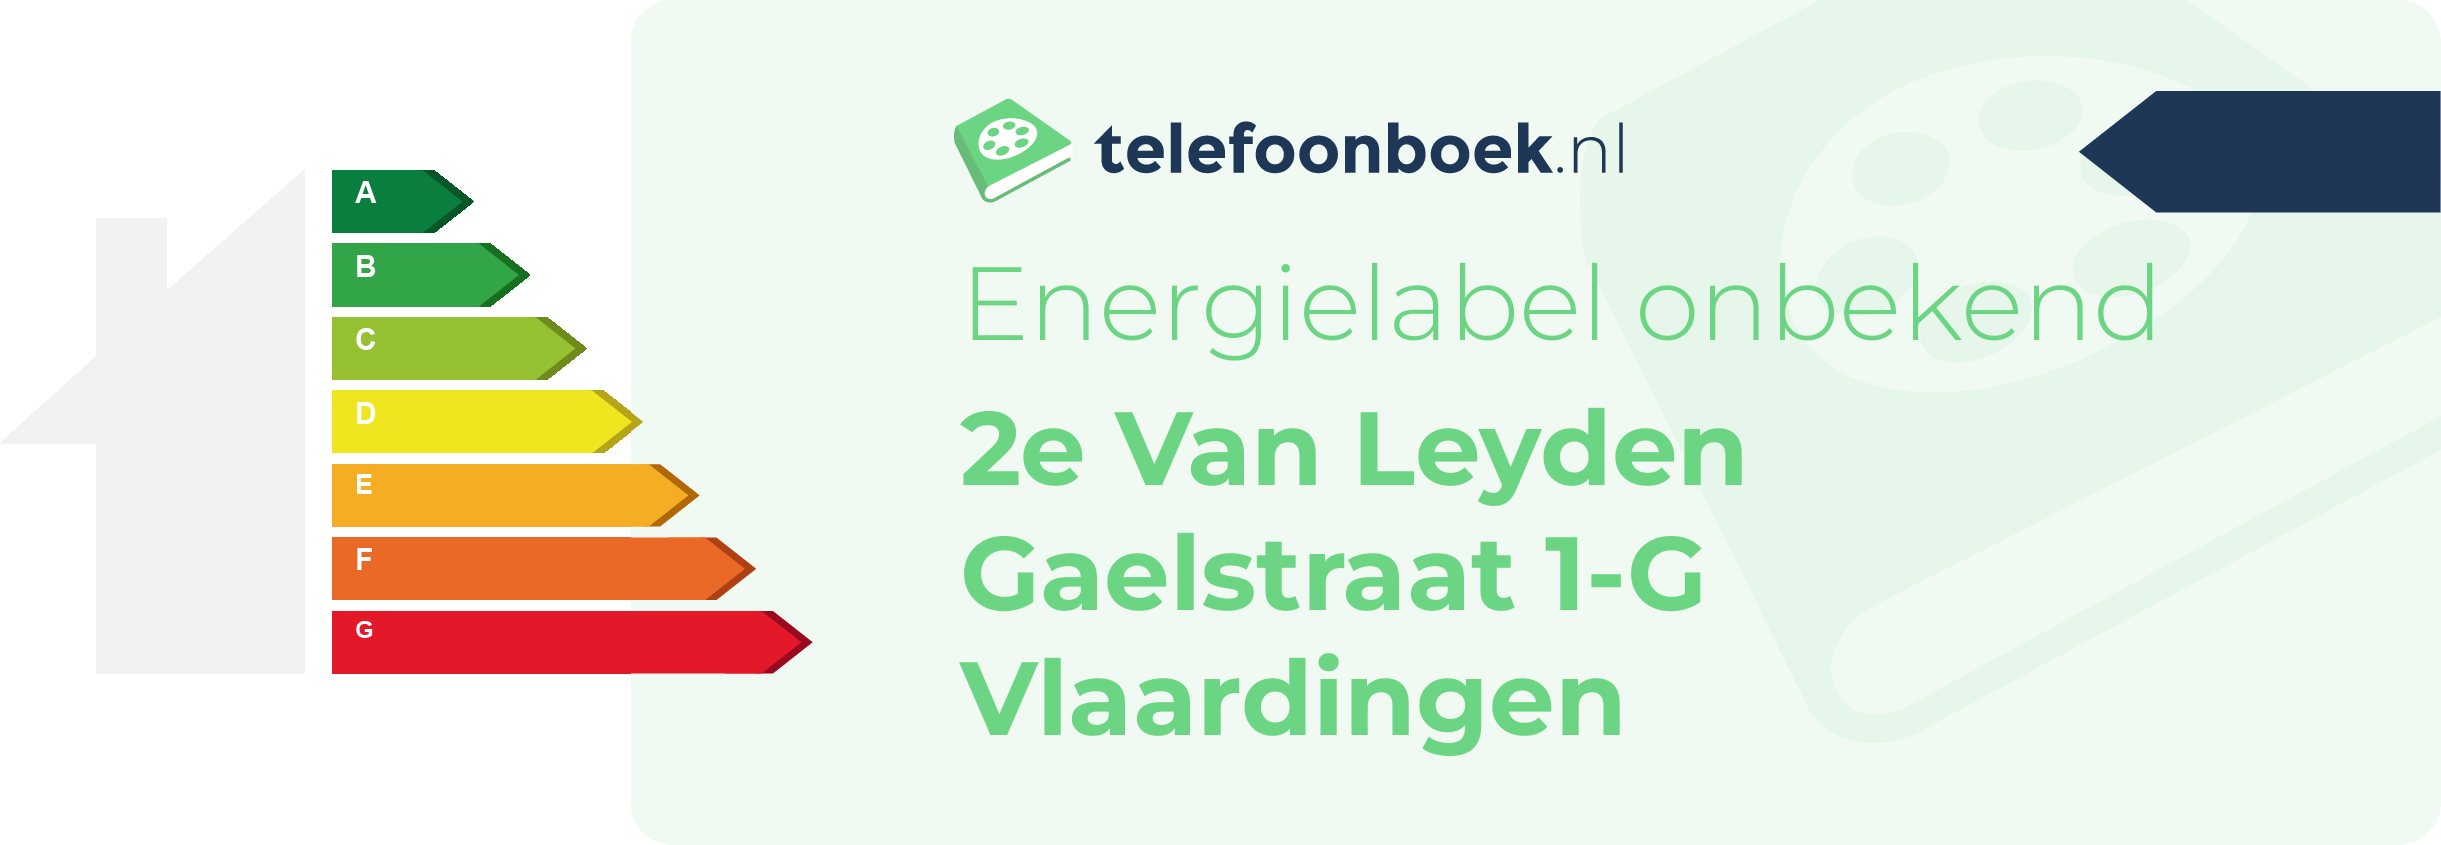 Energielabel 2e Van Leyden Gaelstraat 1-G Vlaardingen